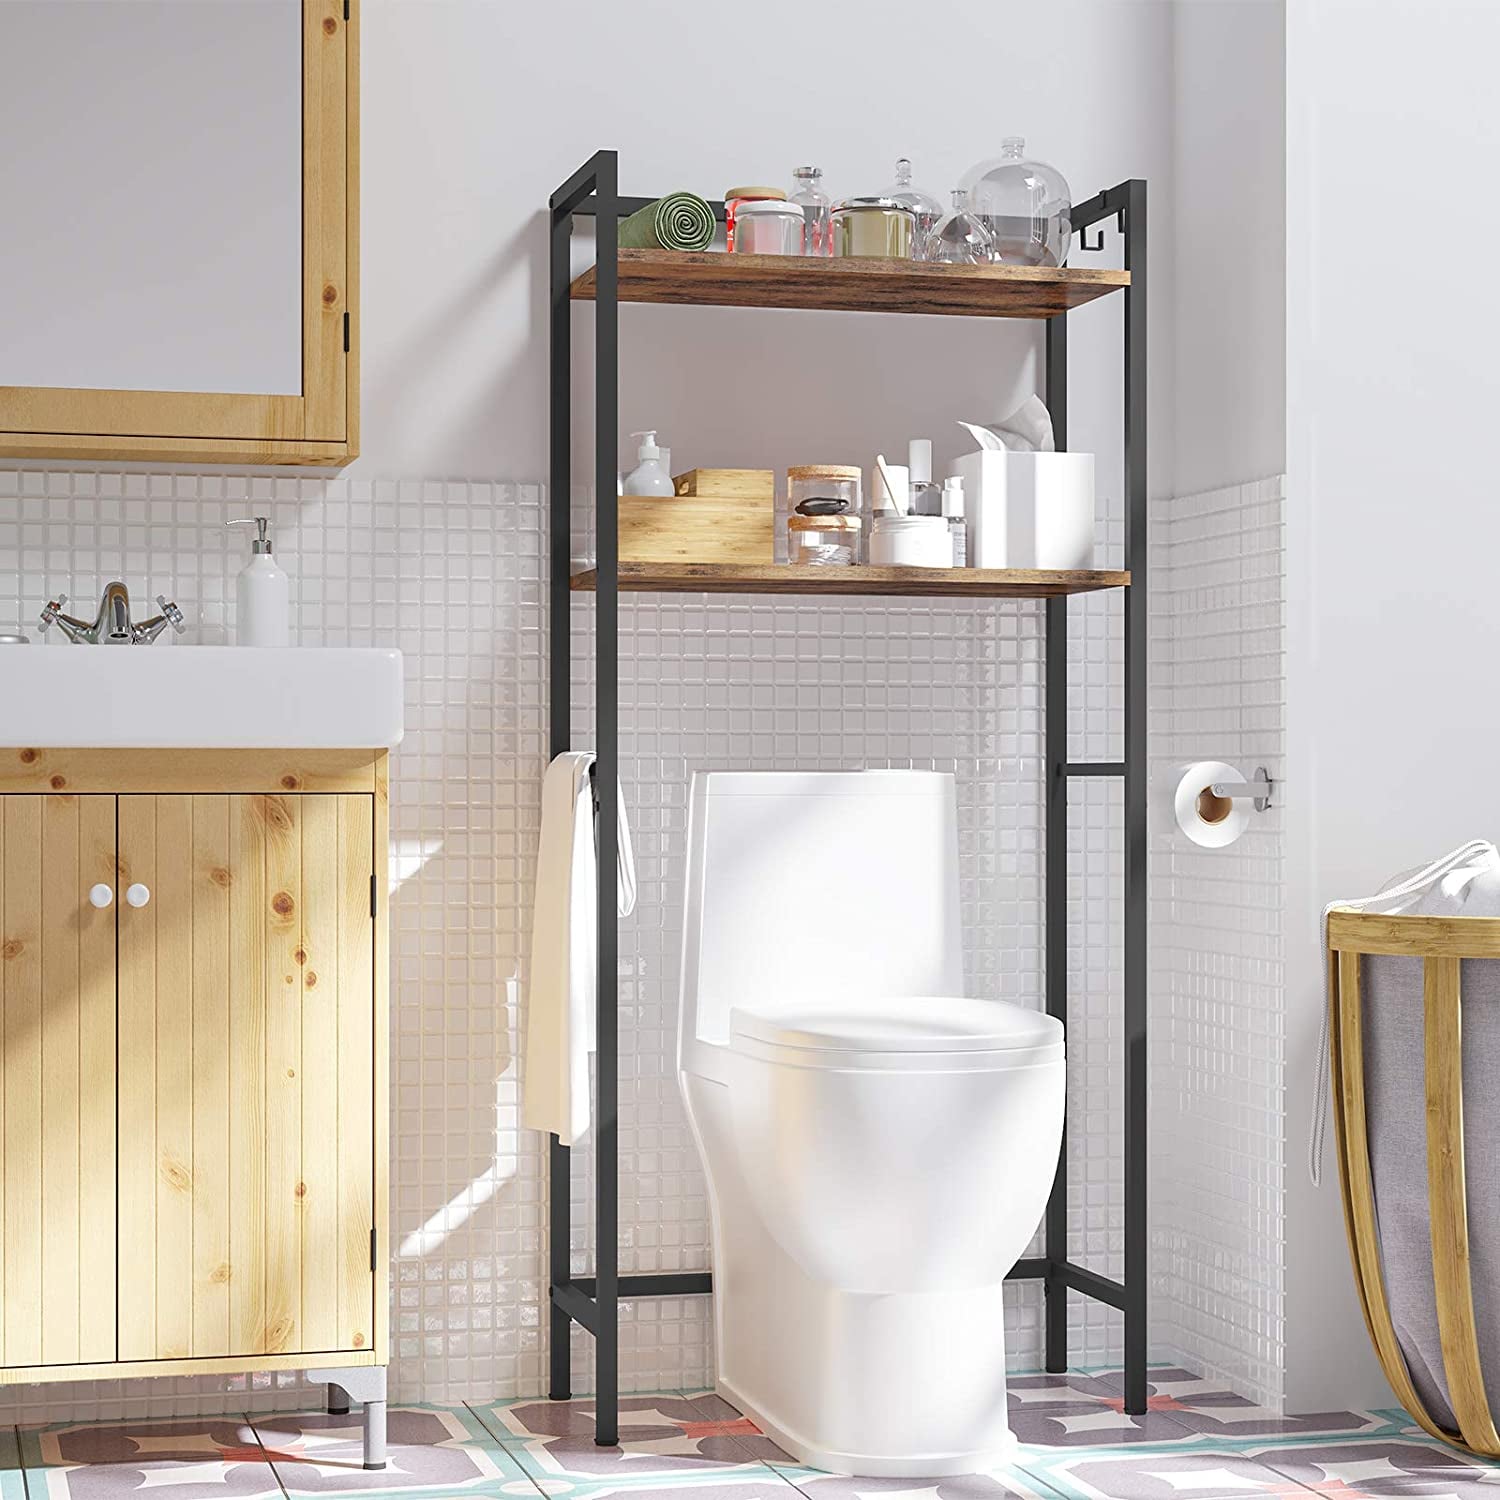 Details about    Bathroom Toilet Shelf Floor Storage Rack Cart Artifact Bathroom Corner Articles 